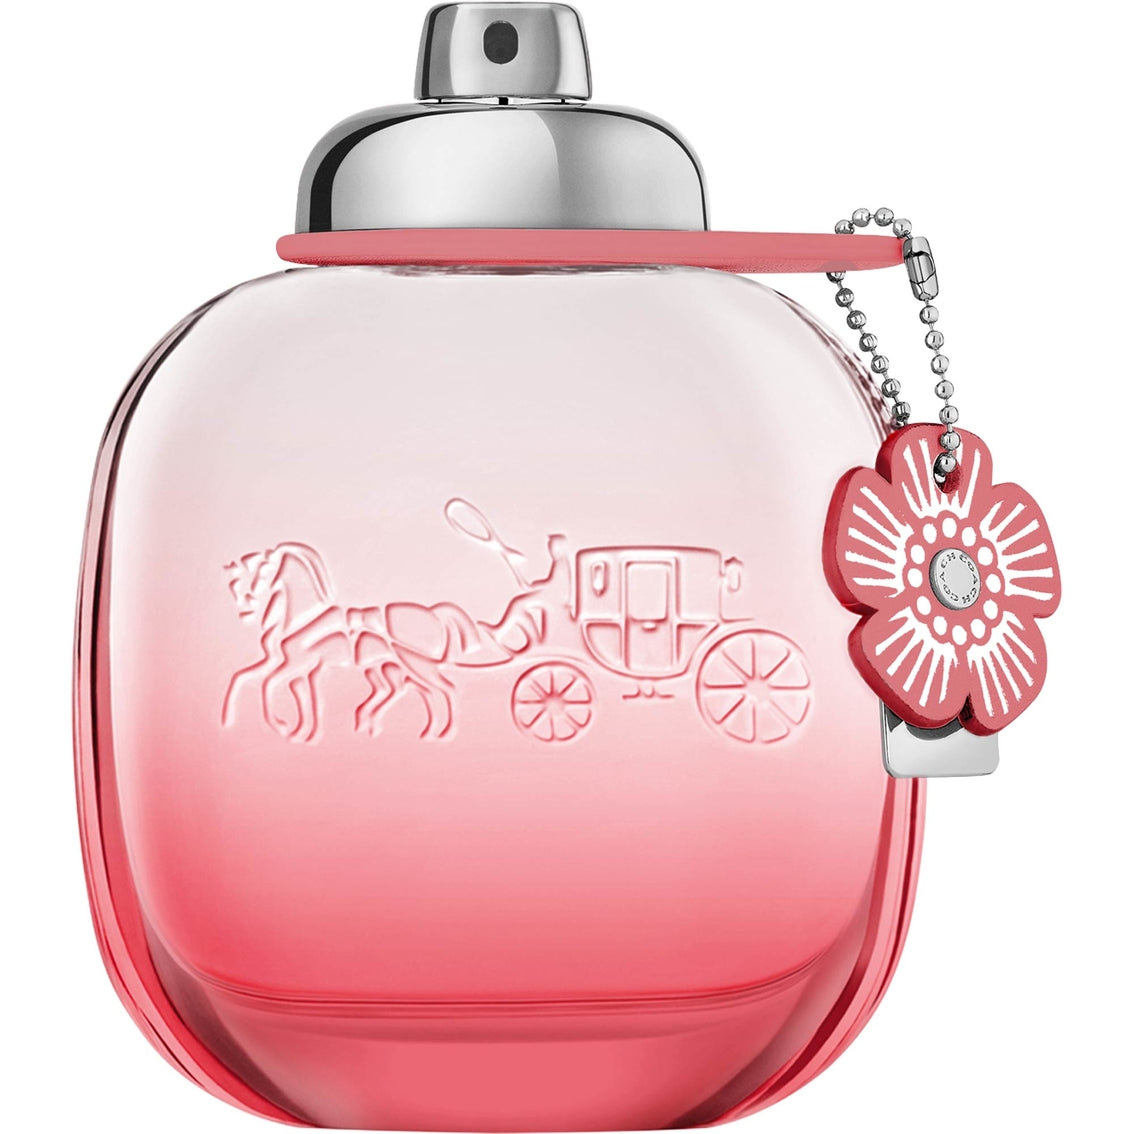 COACH - Floral Blush Eau de Parfum, 3 oz